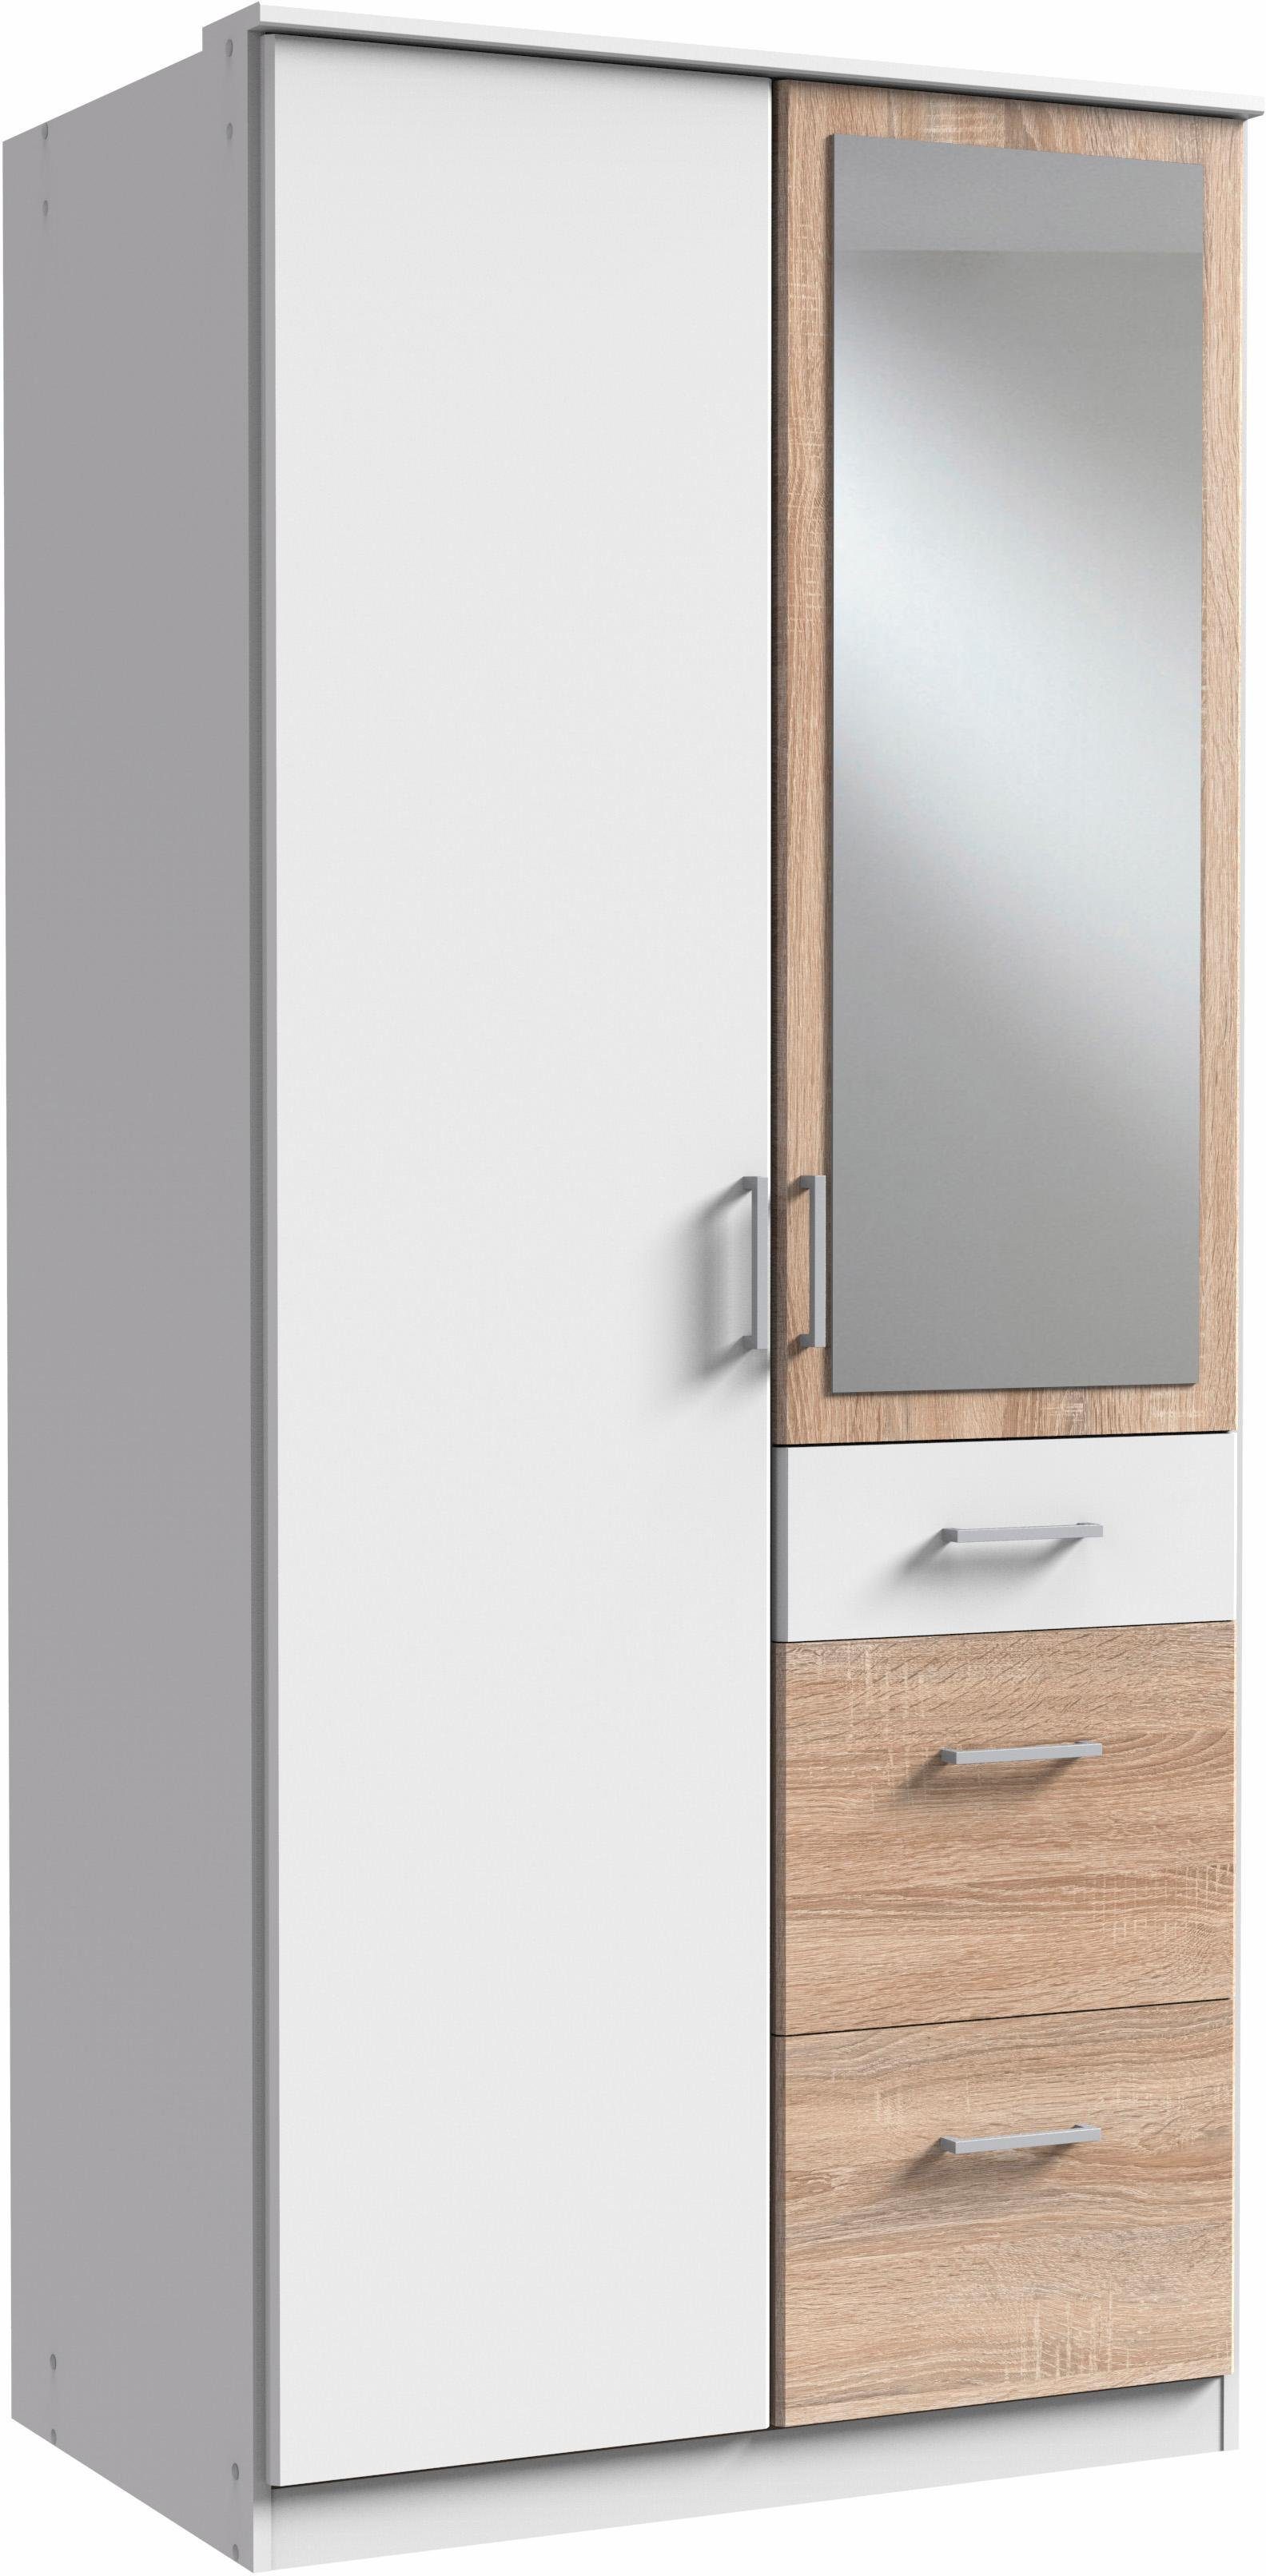 Wimex Kleiderschrank Click mit Spiegel weiß/struktureichefarben hell | Kleiderschränke